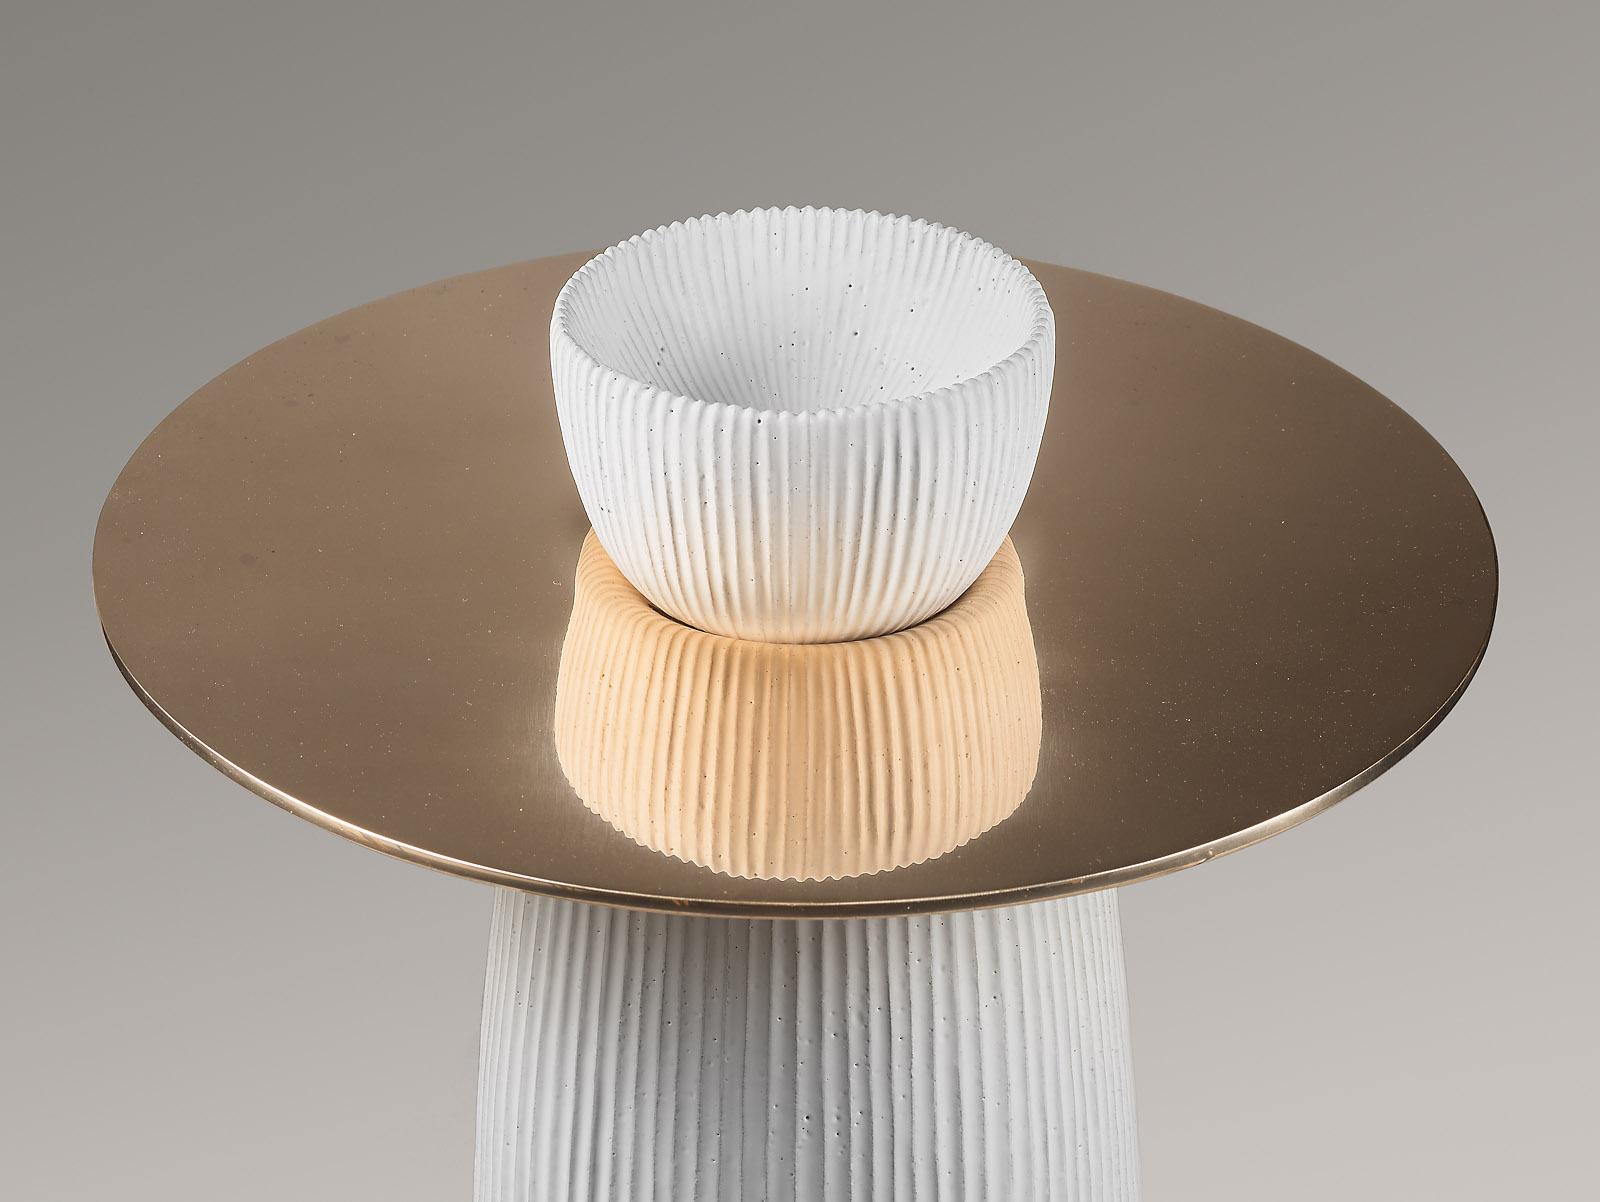 ‘Polka’ side table, glazed sandstone base and polished bronze plate.
French work by designer Emmanuel Levet-Stenne and ceramist Isabelle Sicart. Limited edition of 8, 2014.